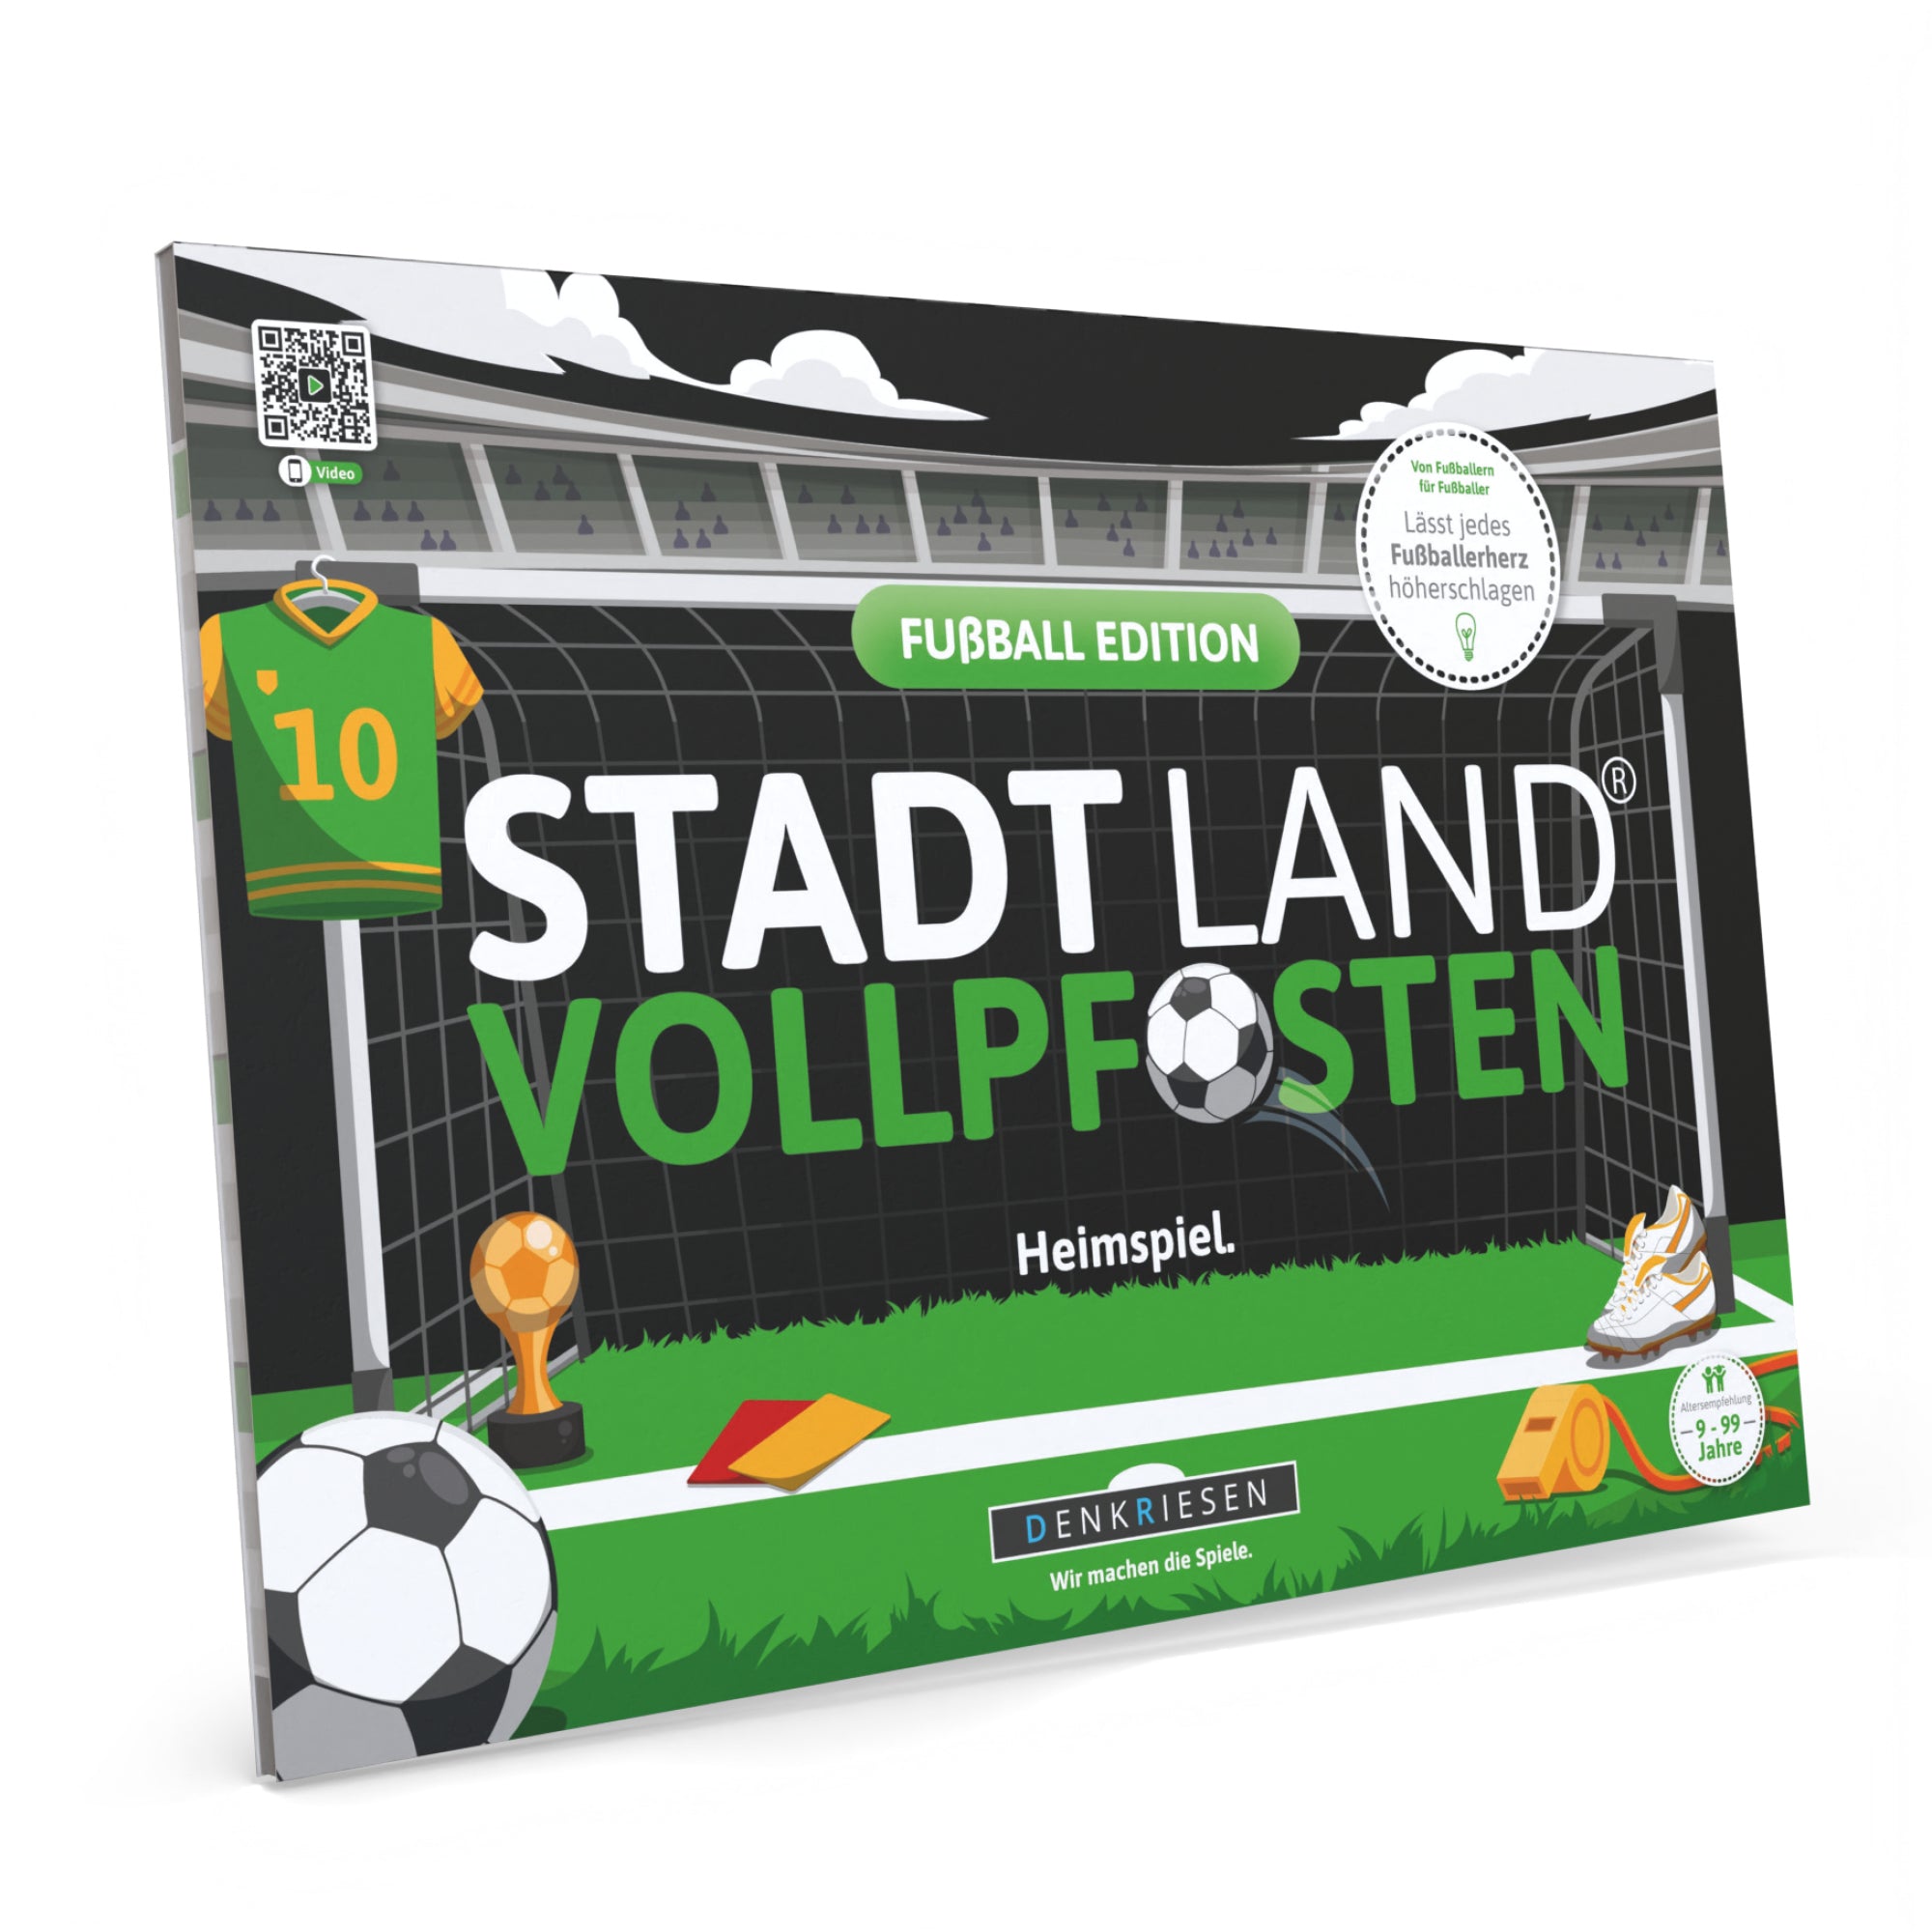 STADT LAND VOLLPFOSTEN® - FUßBALL EDITION - "Heimspiel." - A4